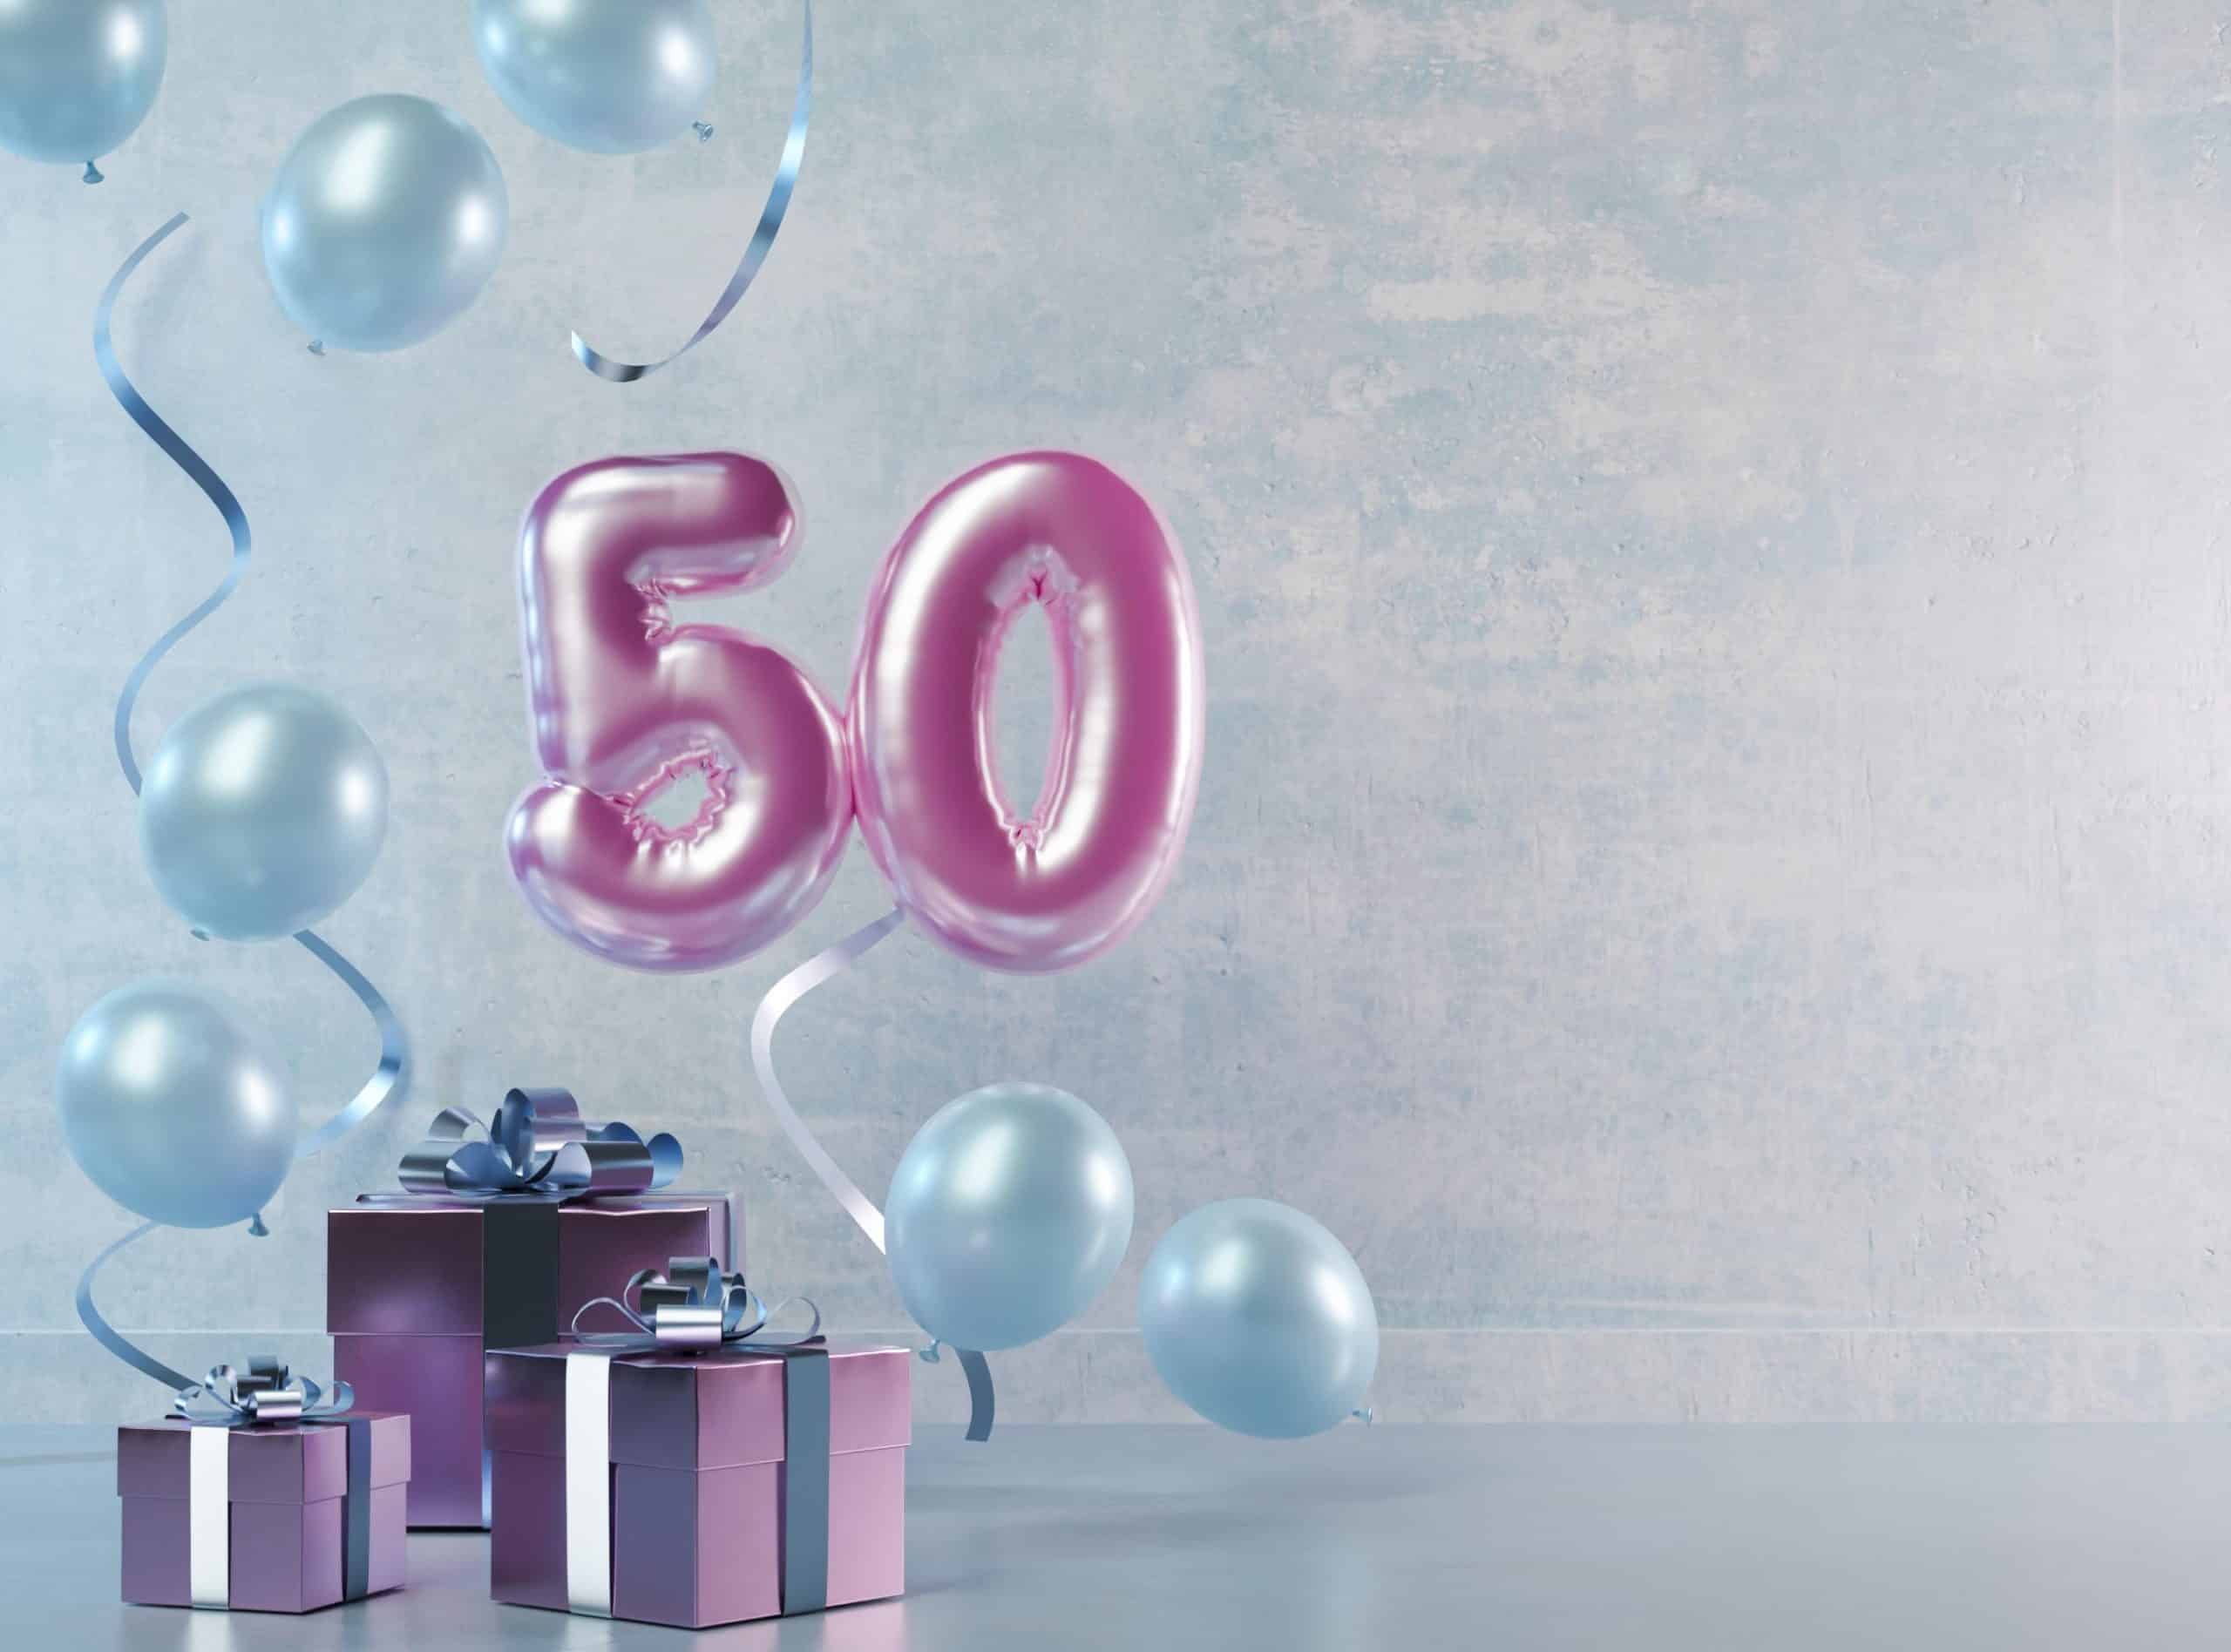 Qué no puede faltar en una fiesta de 50 cumpleaños? ⋆ ICNFNT